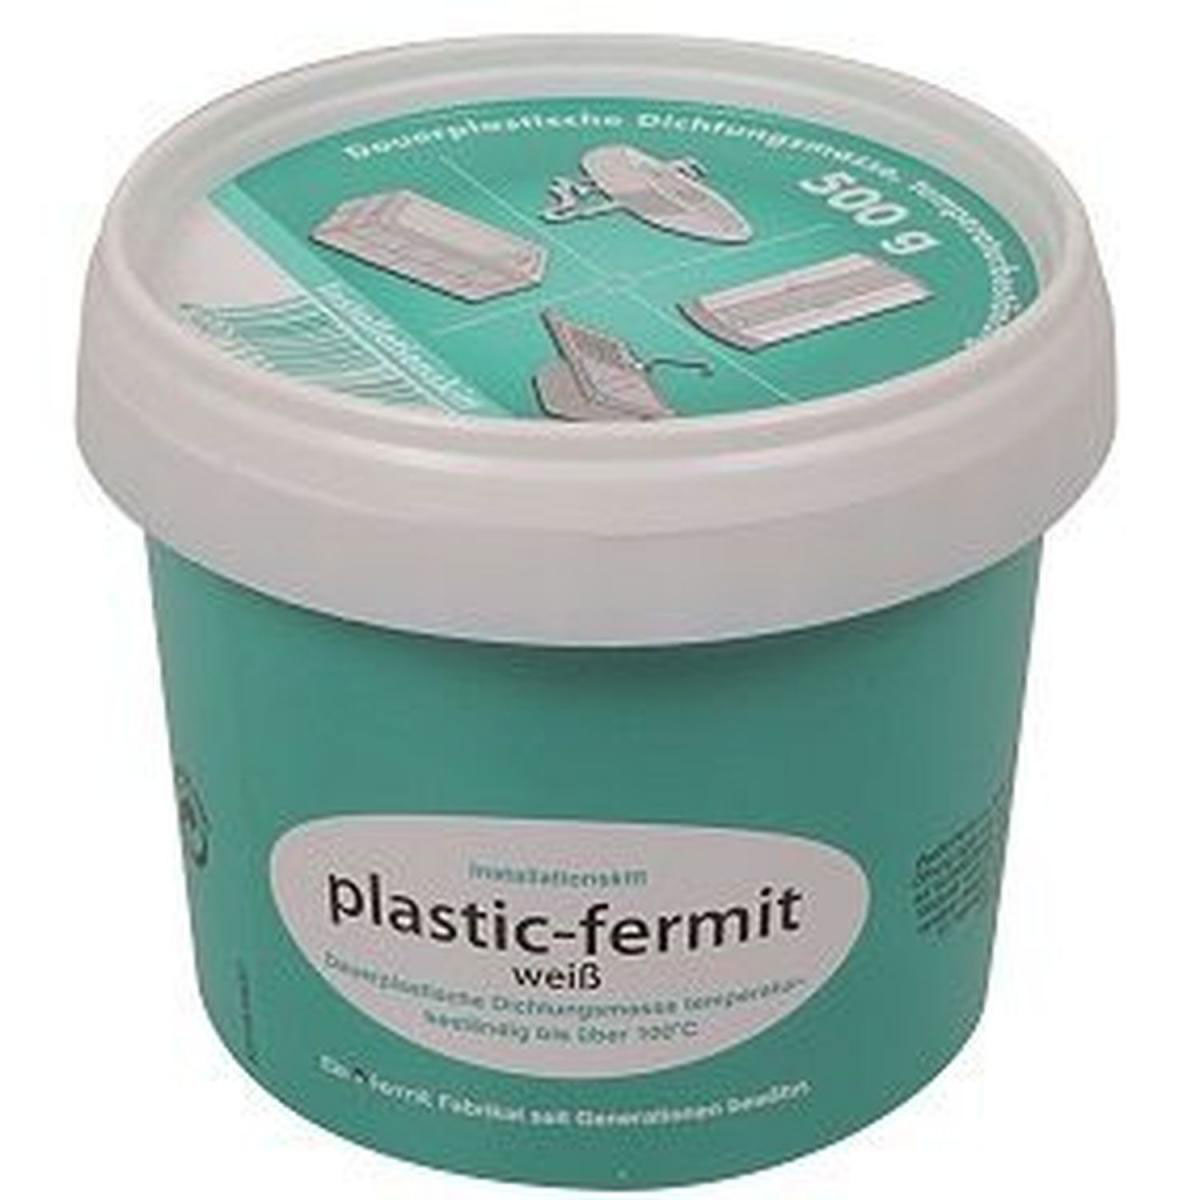 Plastic-Fermit Dose 500g